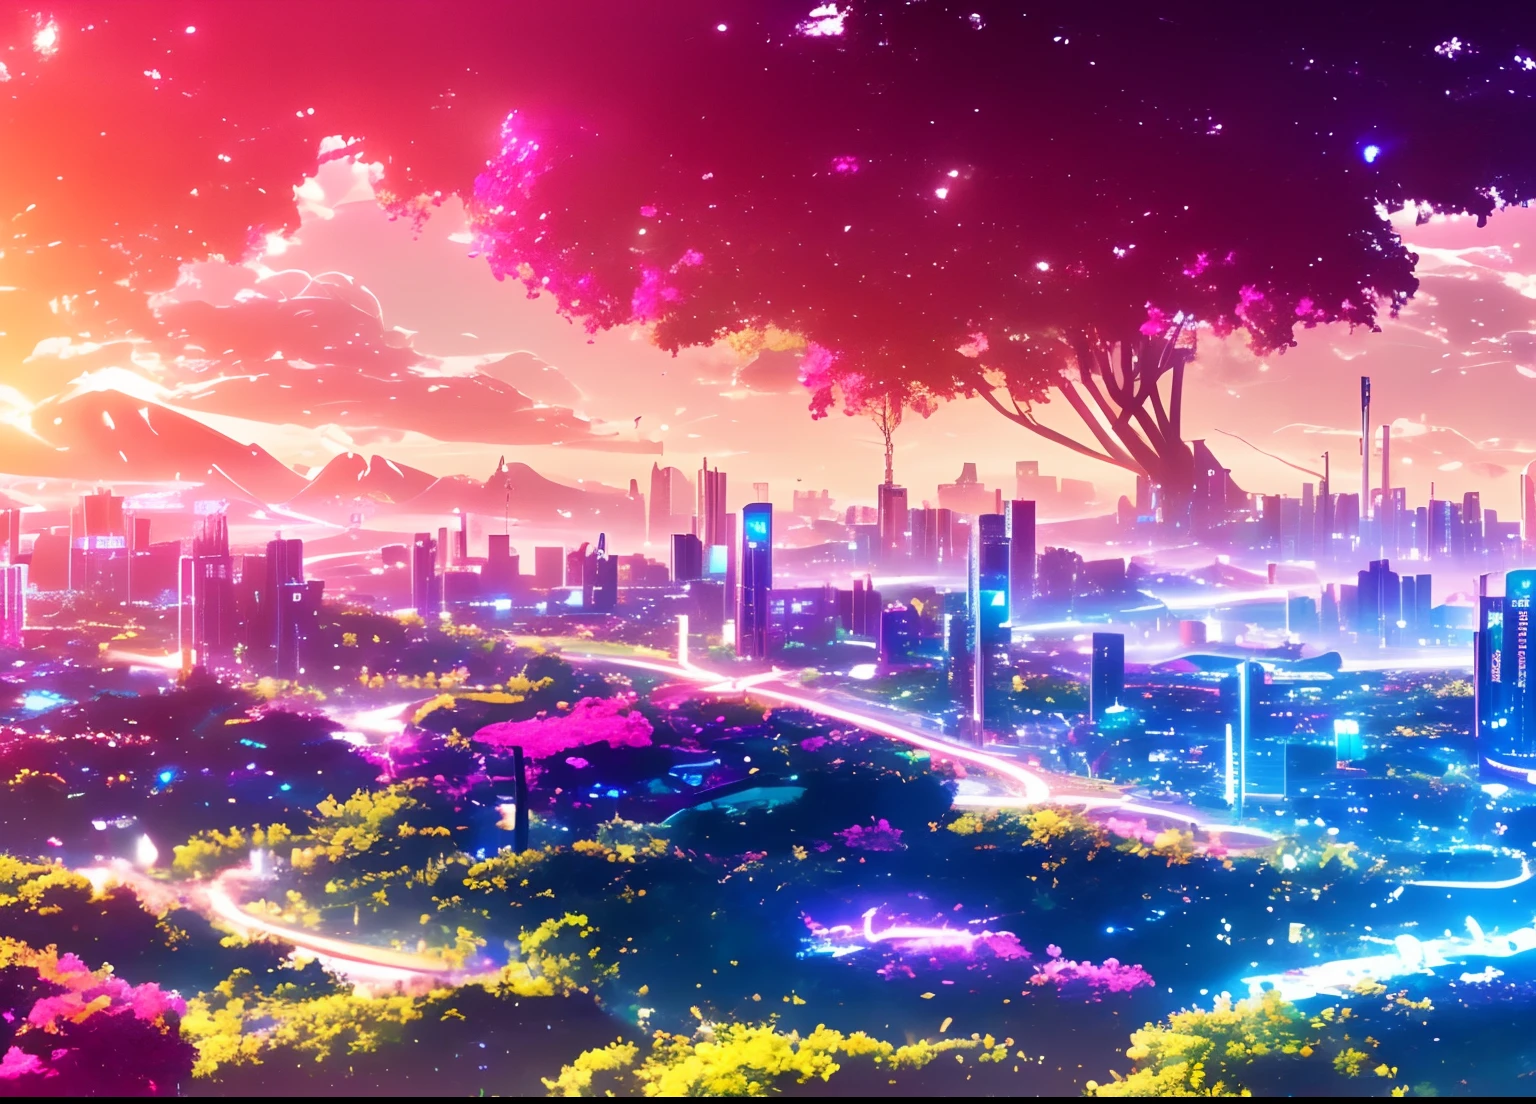 аниме-сцена из Дискодиленда, города, цветы, АртСтанция, острый фокус, вдохновляющие обои 8k, яркие цвета, неоновые лампы